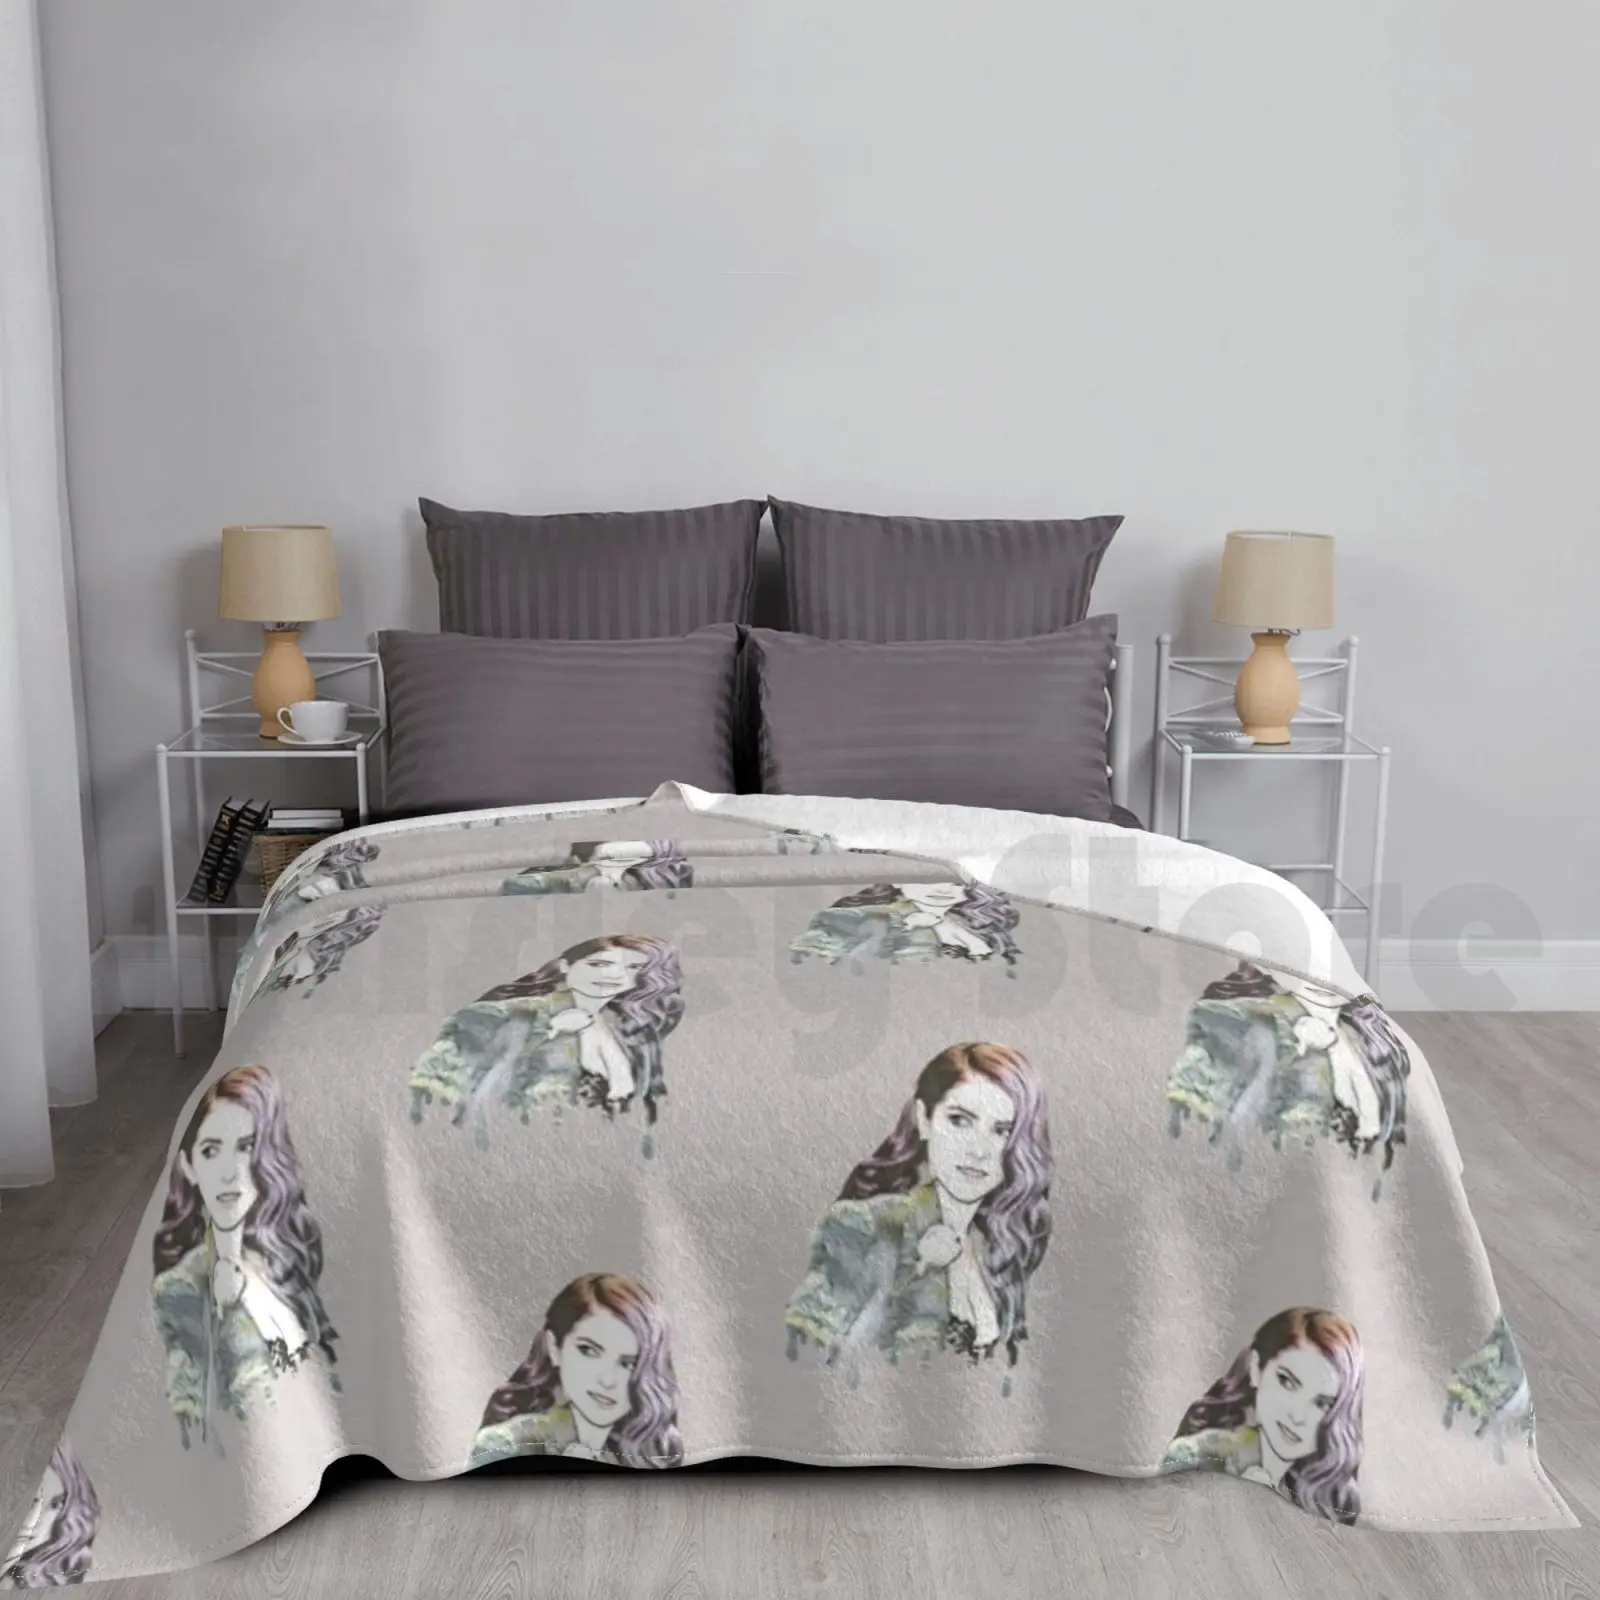 

Одеяло Анна Кендрик-капля, модное одеяло на заказ, Анна кенданна Рик Кендрик, шаг идеальных троллей, поп-культура